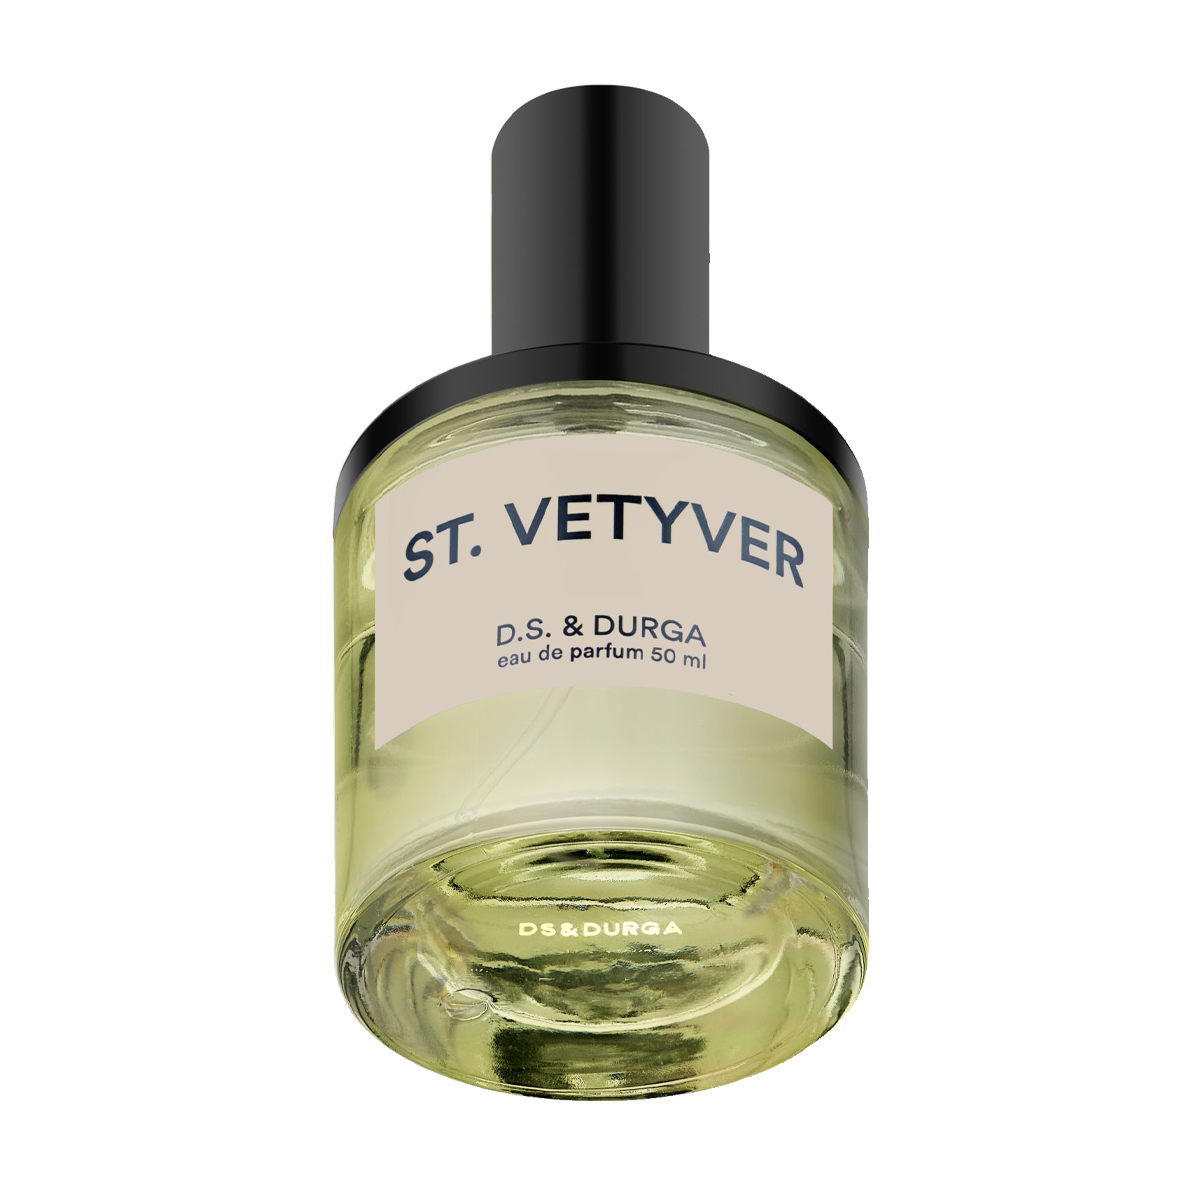 St. Vetyver eau de parfum - 50ml